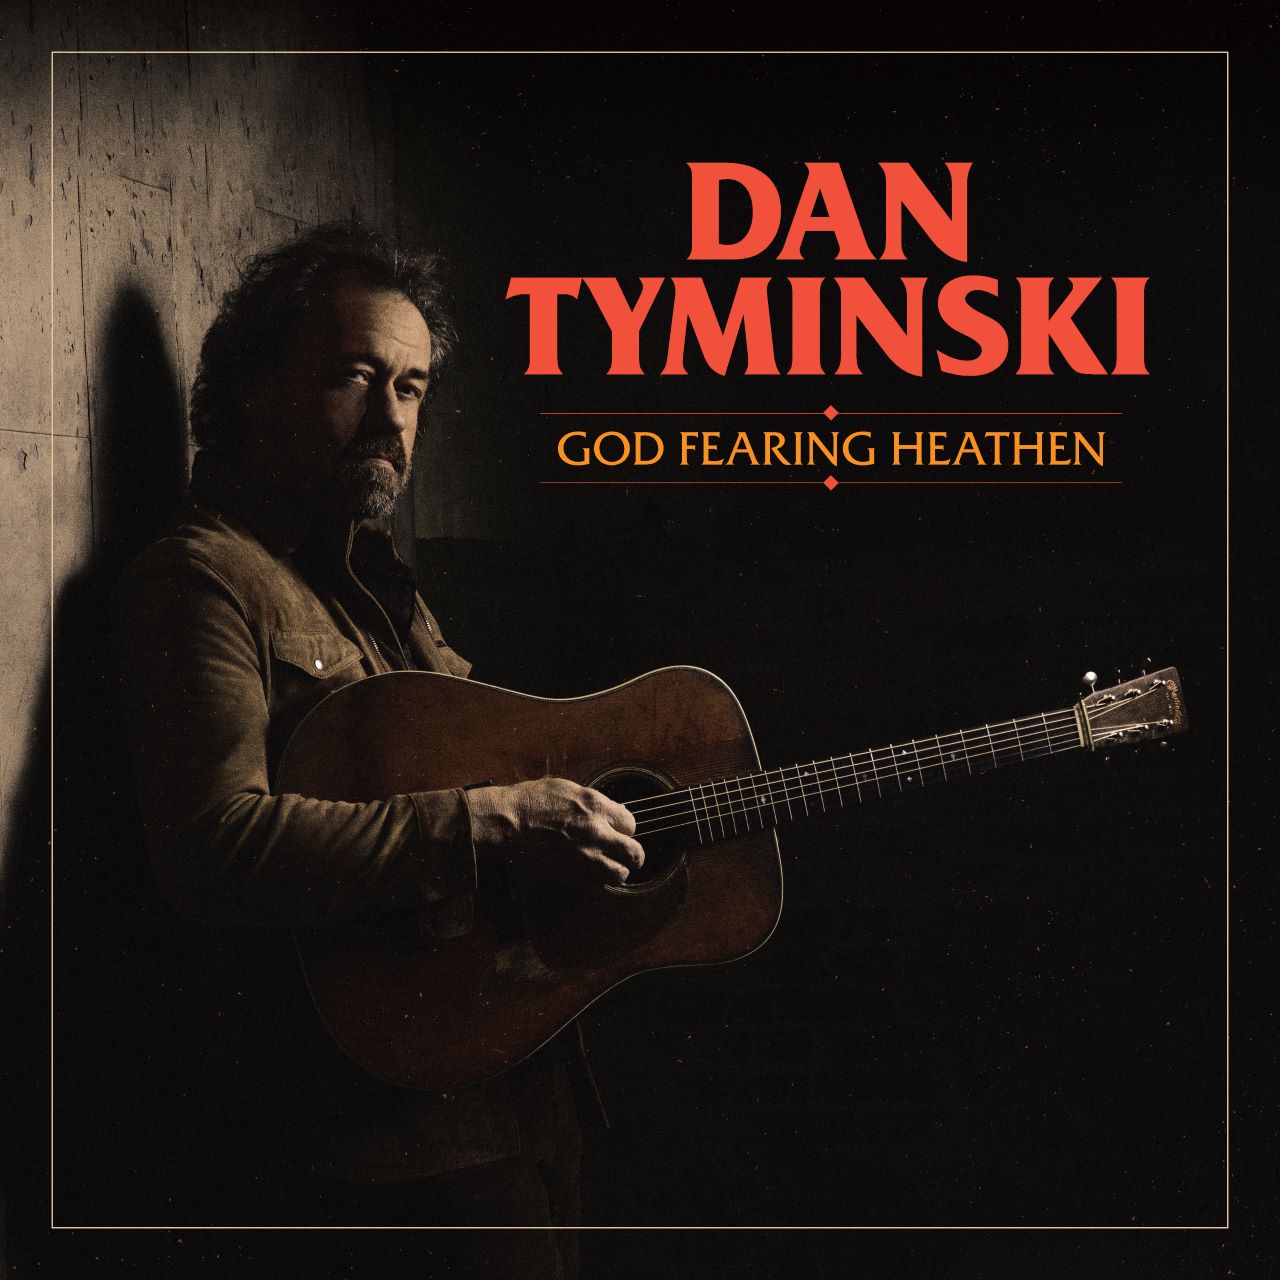 Dan Tyminski - God Fearing Heathen cover album